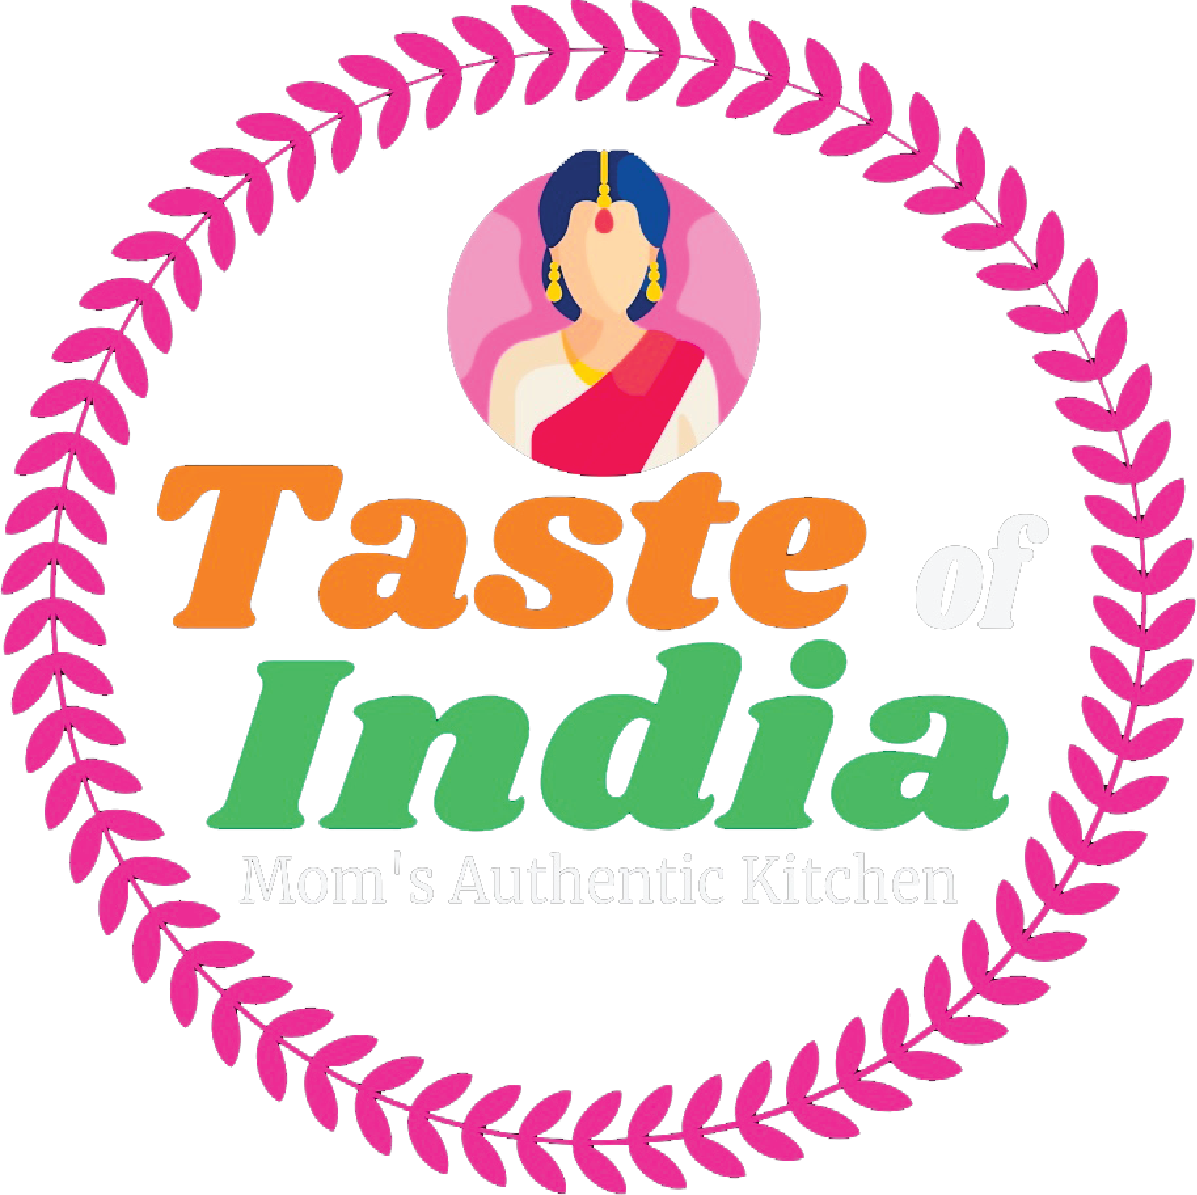 Taste of india